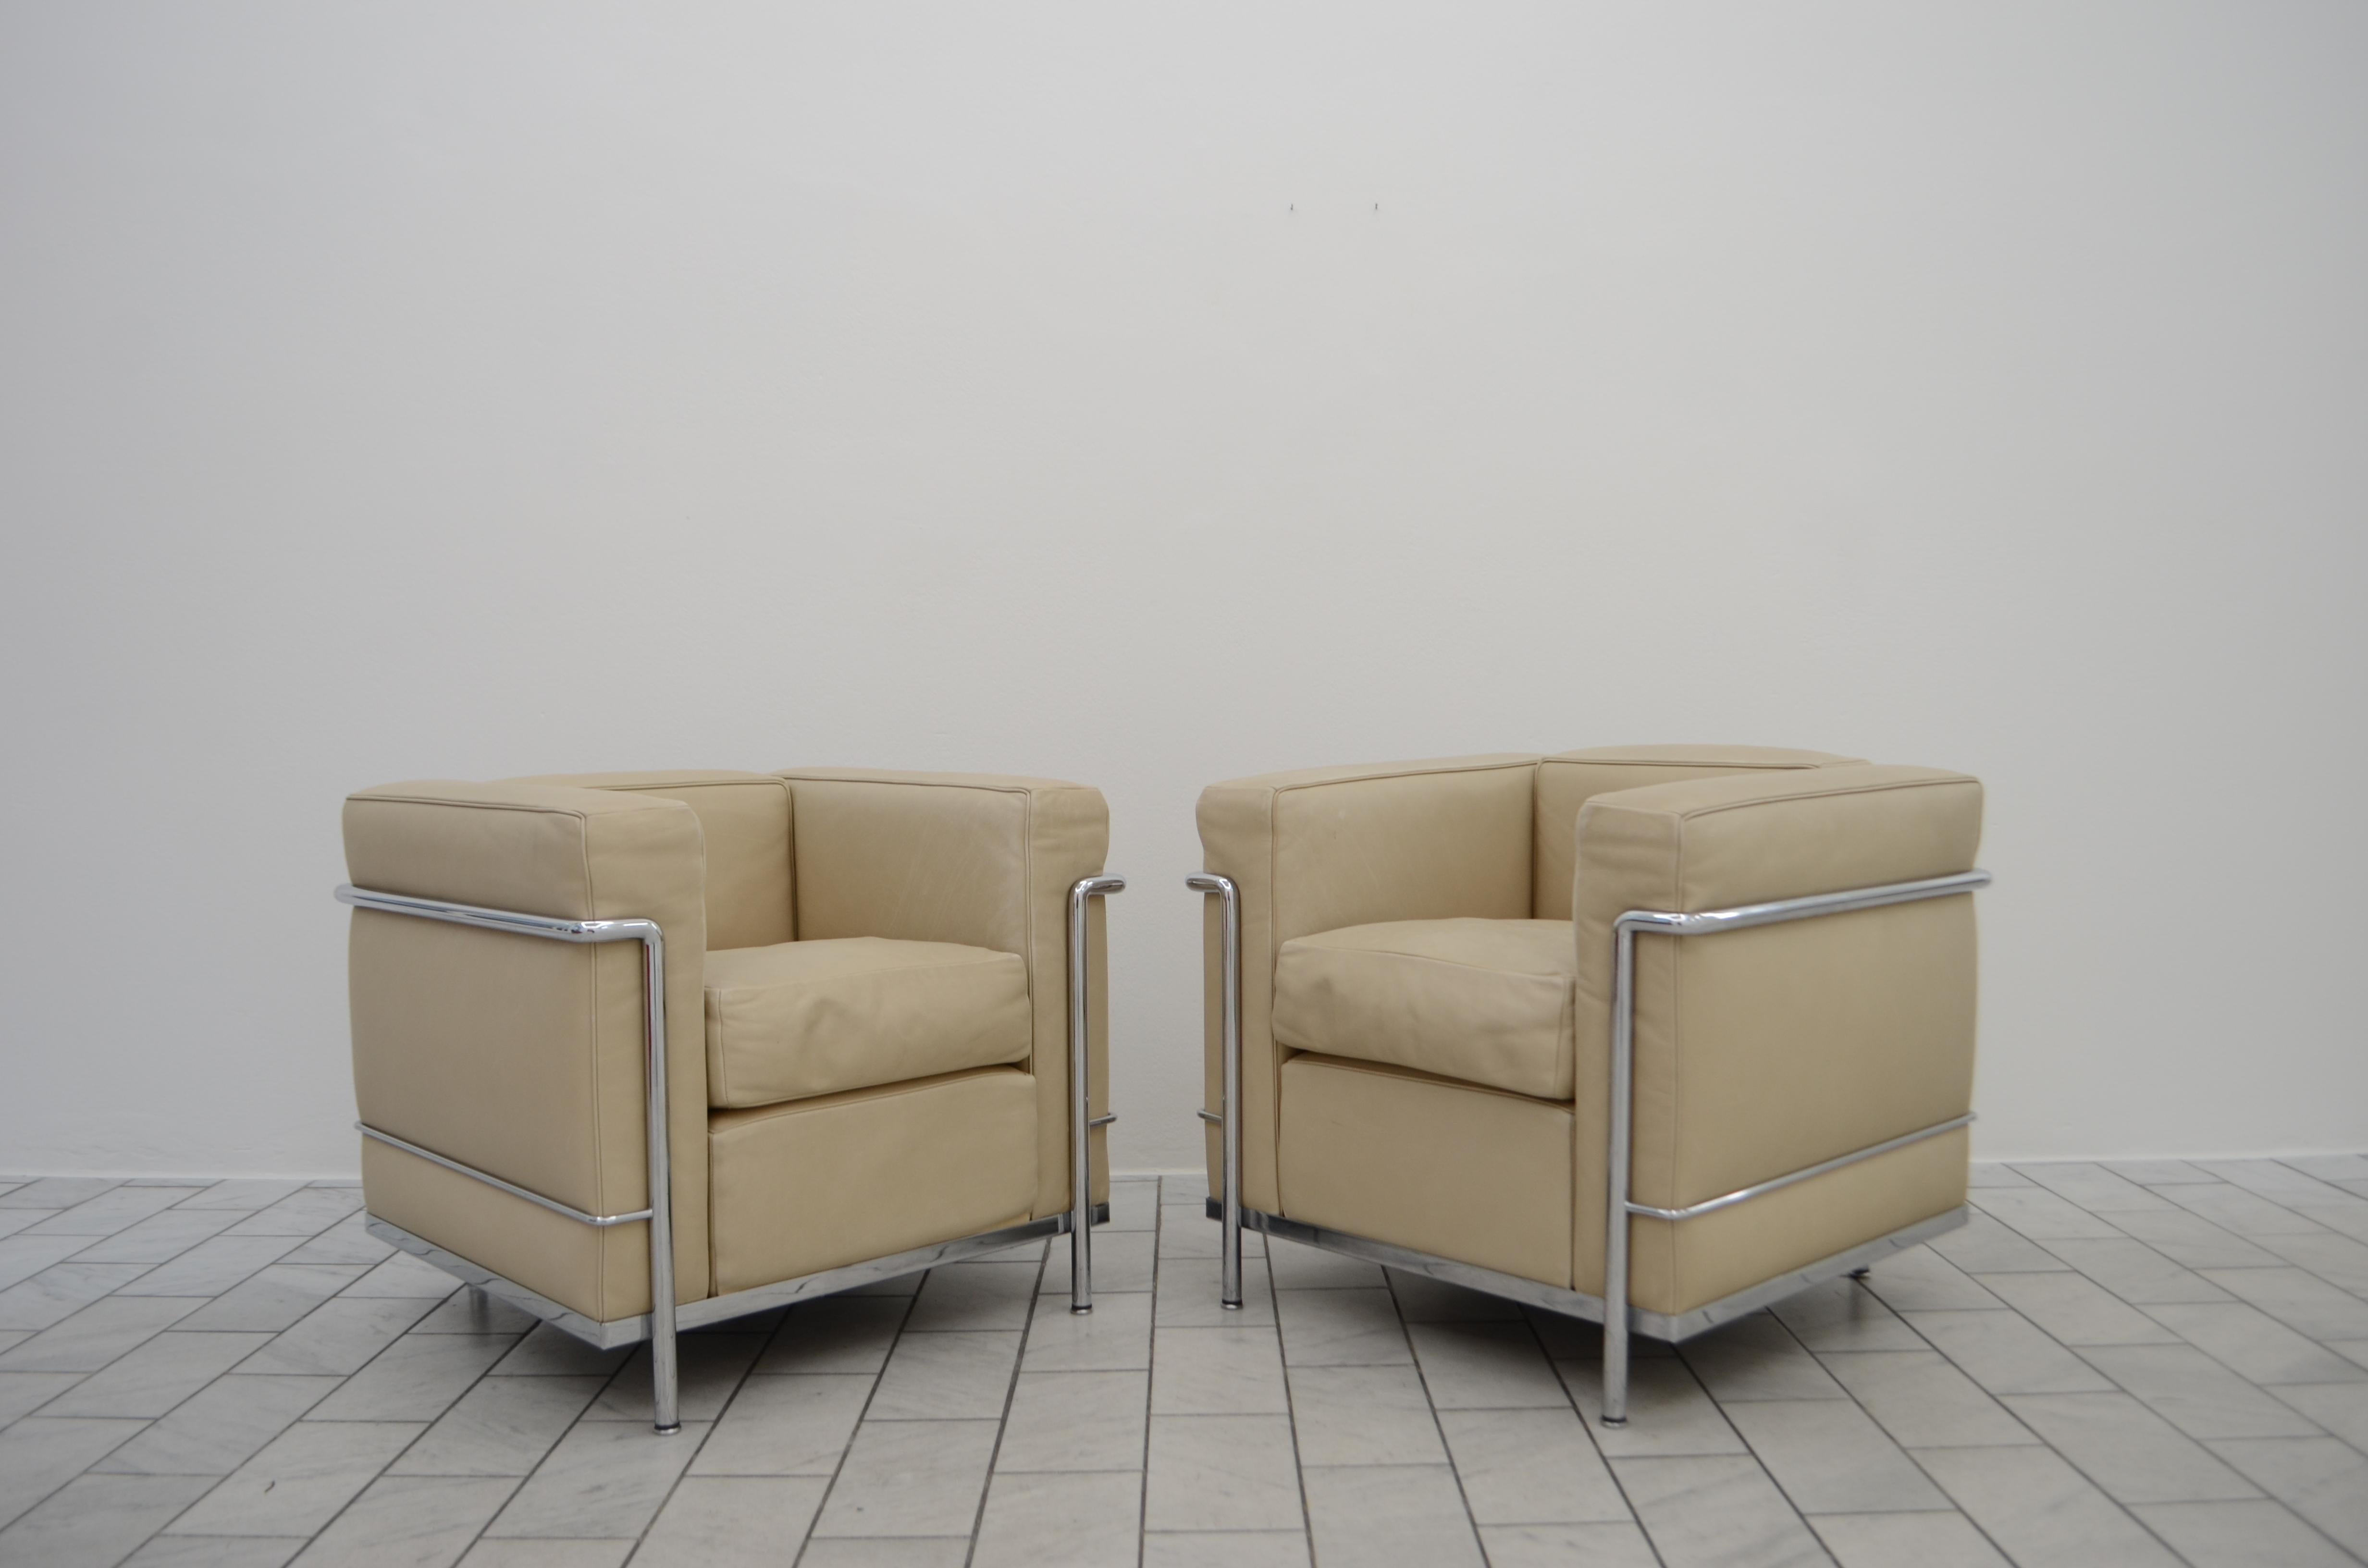 Dieser LC2 Sessel in höchster Exklusivität  Lederqualität wurde von Le Corbusier entworfen und von Cassina hergestellt. 
Der Rahmen besteht aus verchromtem Stahl. 
Klassisches modernes Bauhaus-Objekt in gutem Vintage-Zustand.
Lederqualität Naturale